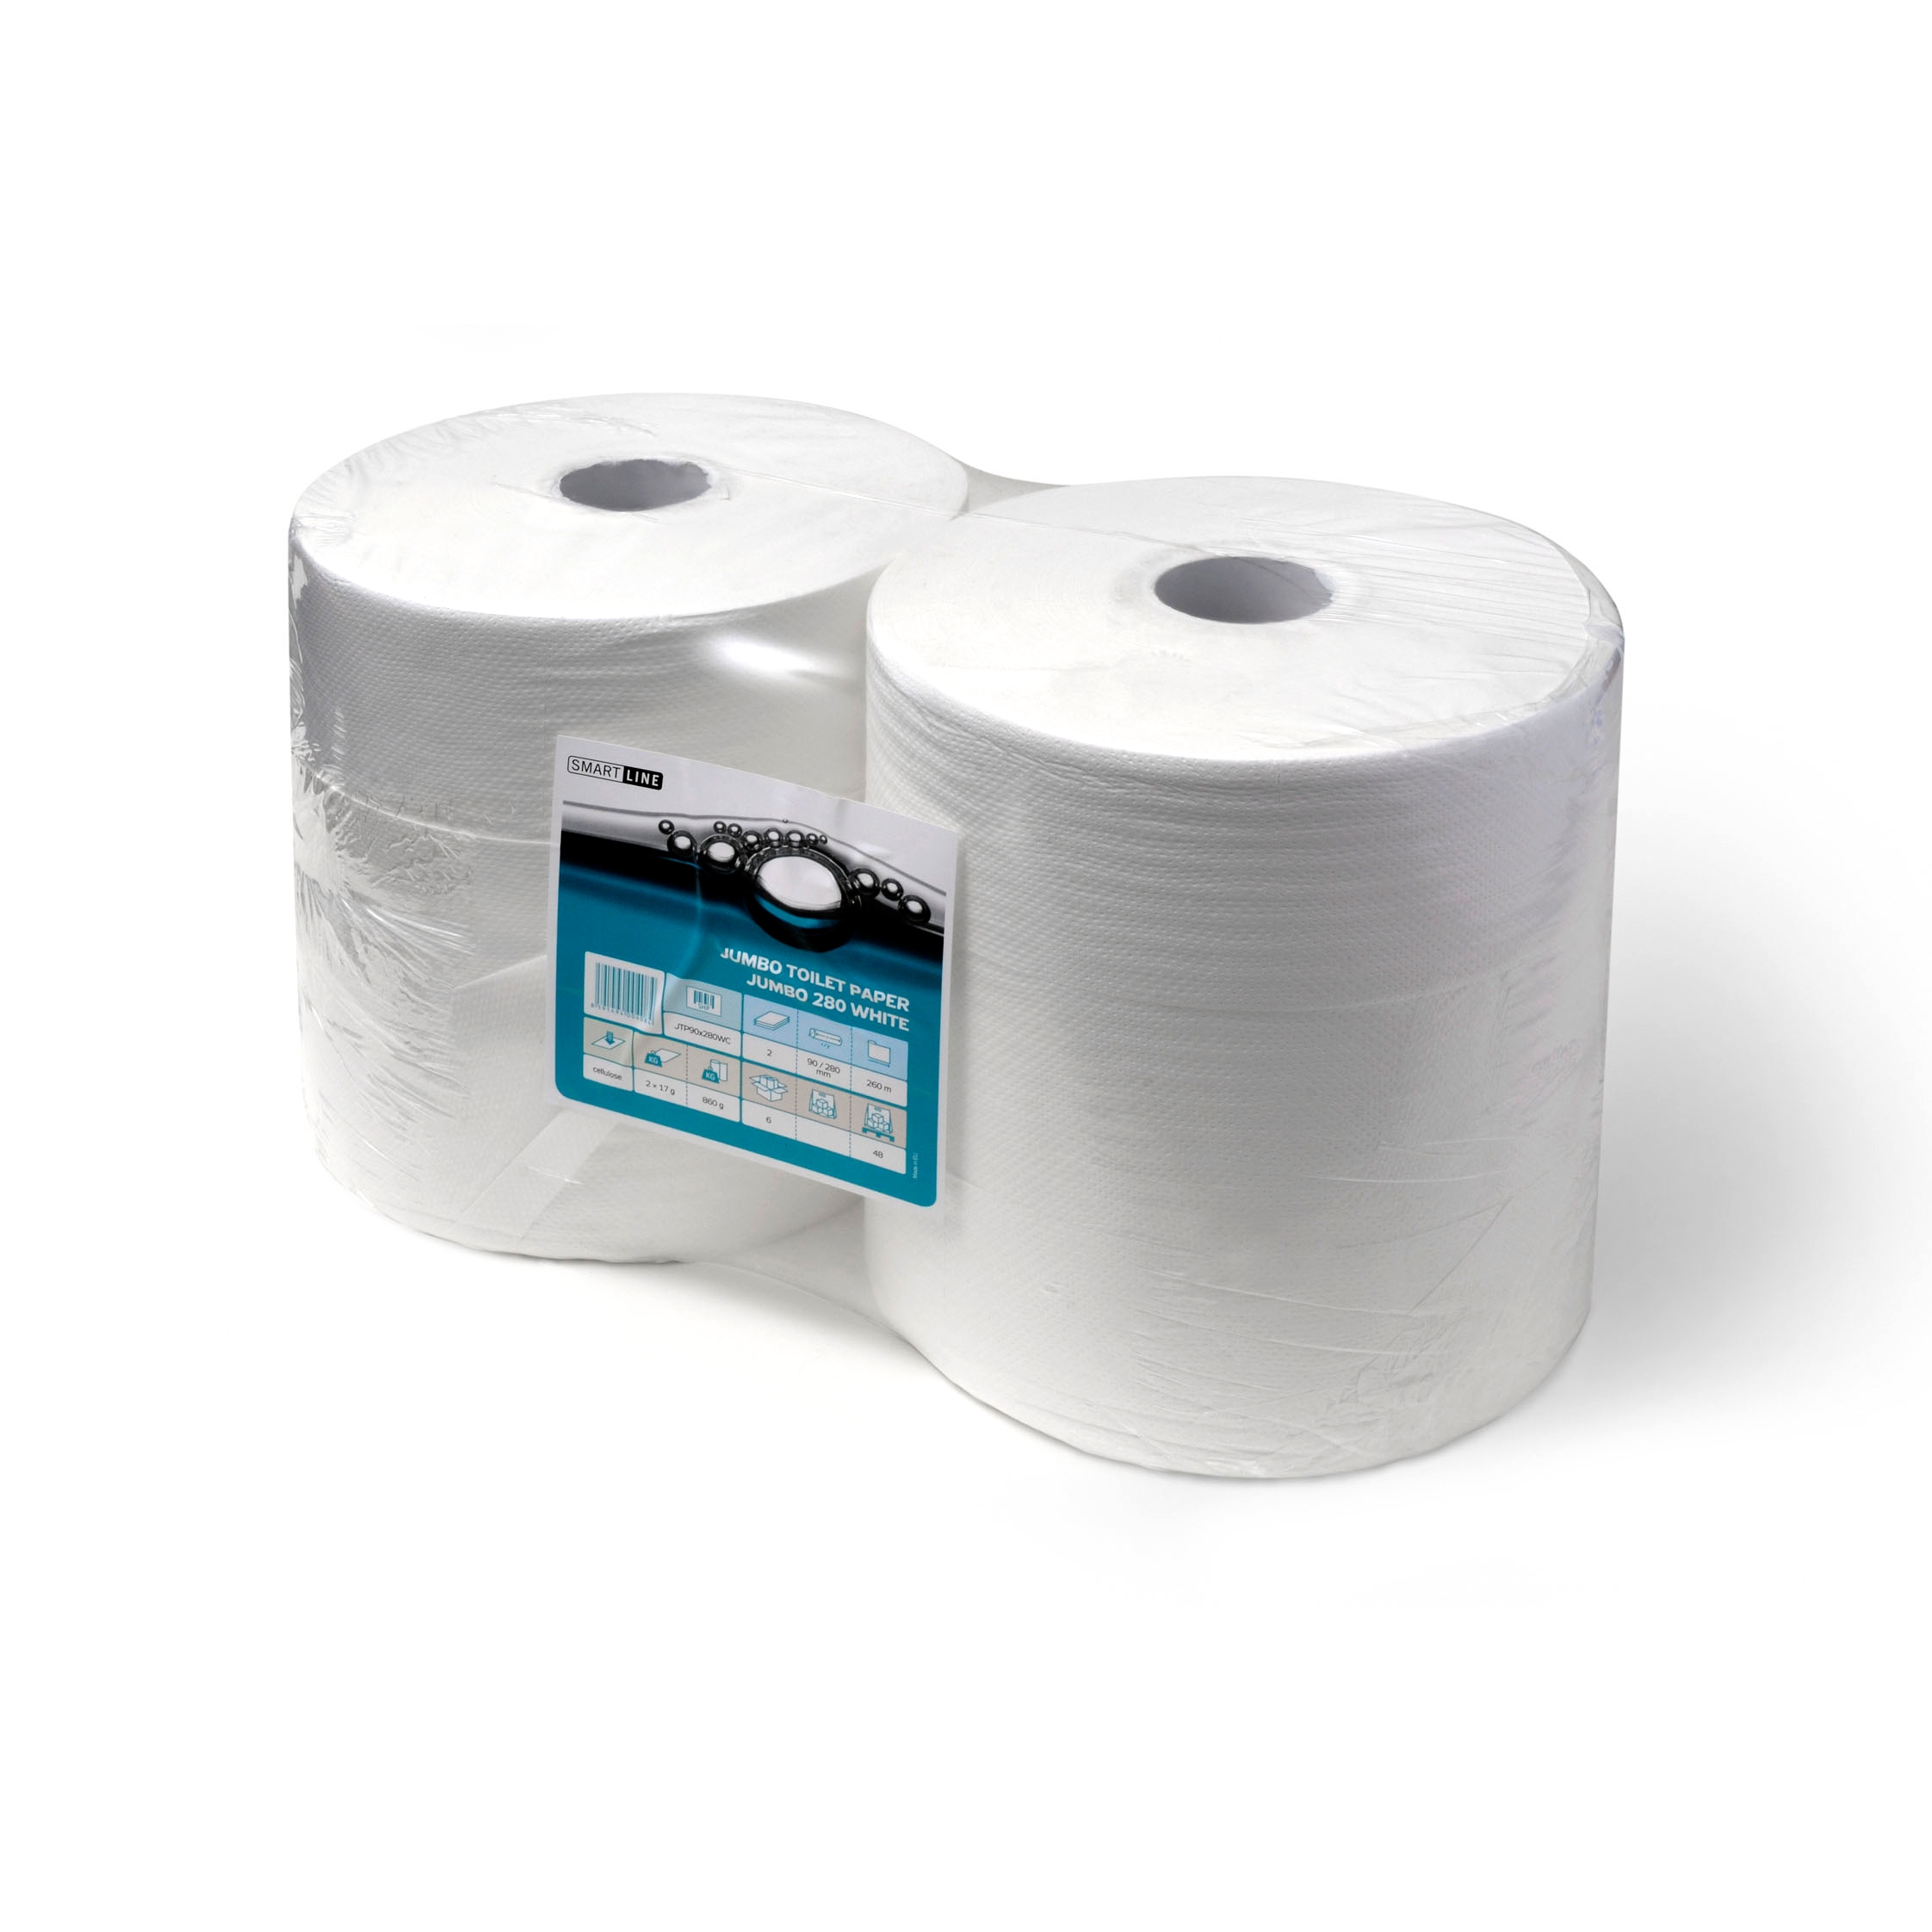 Papír toaletní v roli Harmony šíře 190 mm, 2 vrstvy, celulóza, bílý, (12ks)